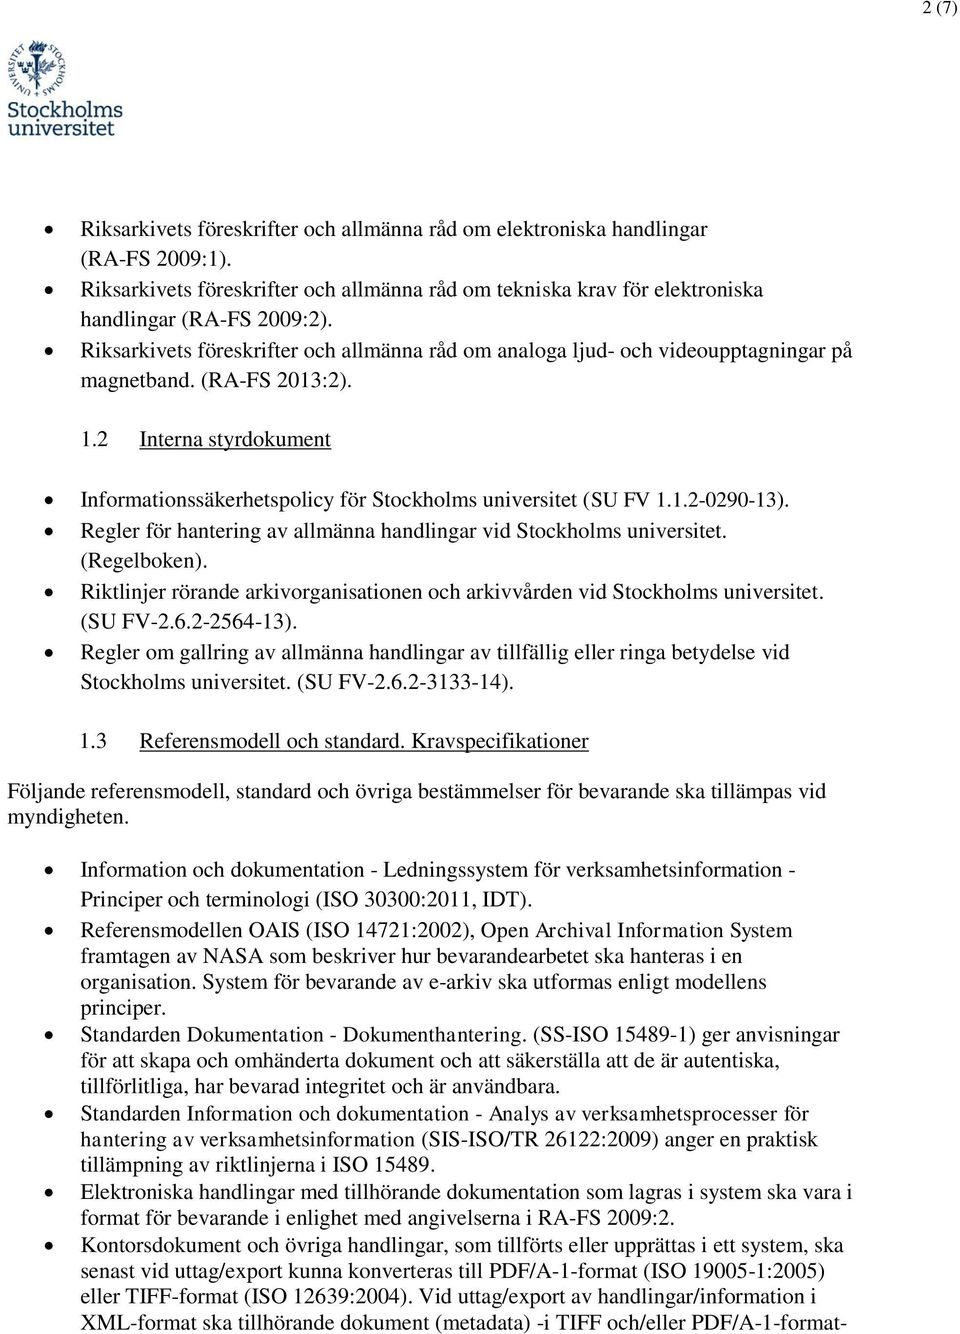 2 Interna styrdokument Informationssäkerhetspolicy för Stockholms universitet (SU FV 1.1.2-0290-13). Regler för hantering av allmänna handlingar vid Stockholms universitet. (Regelboken).